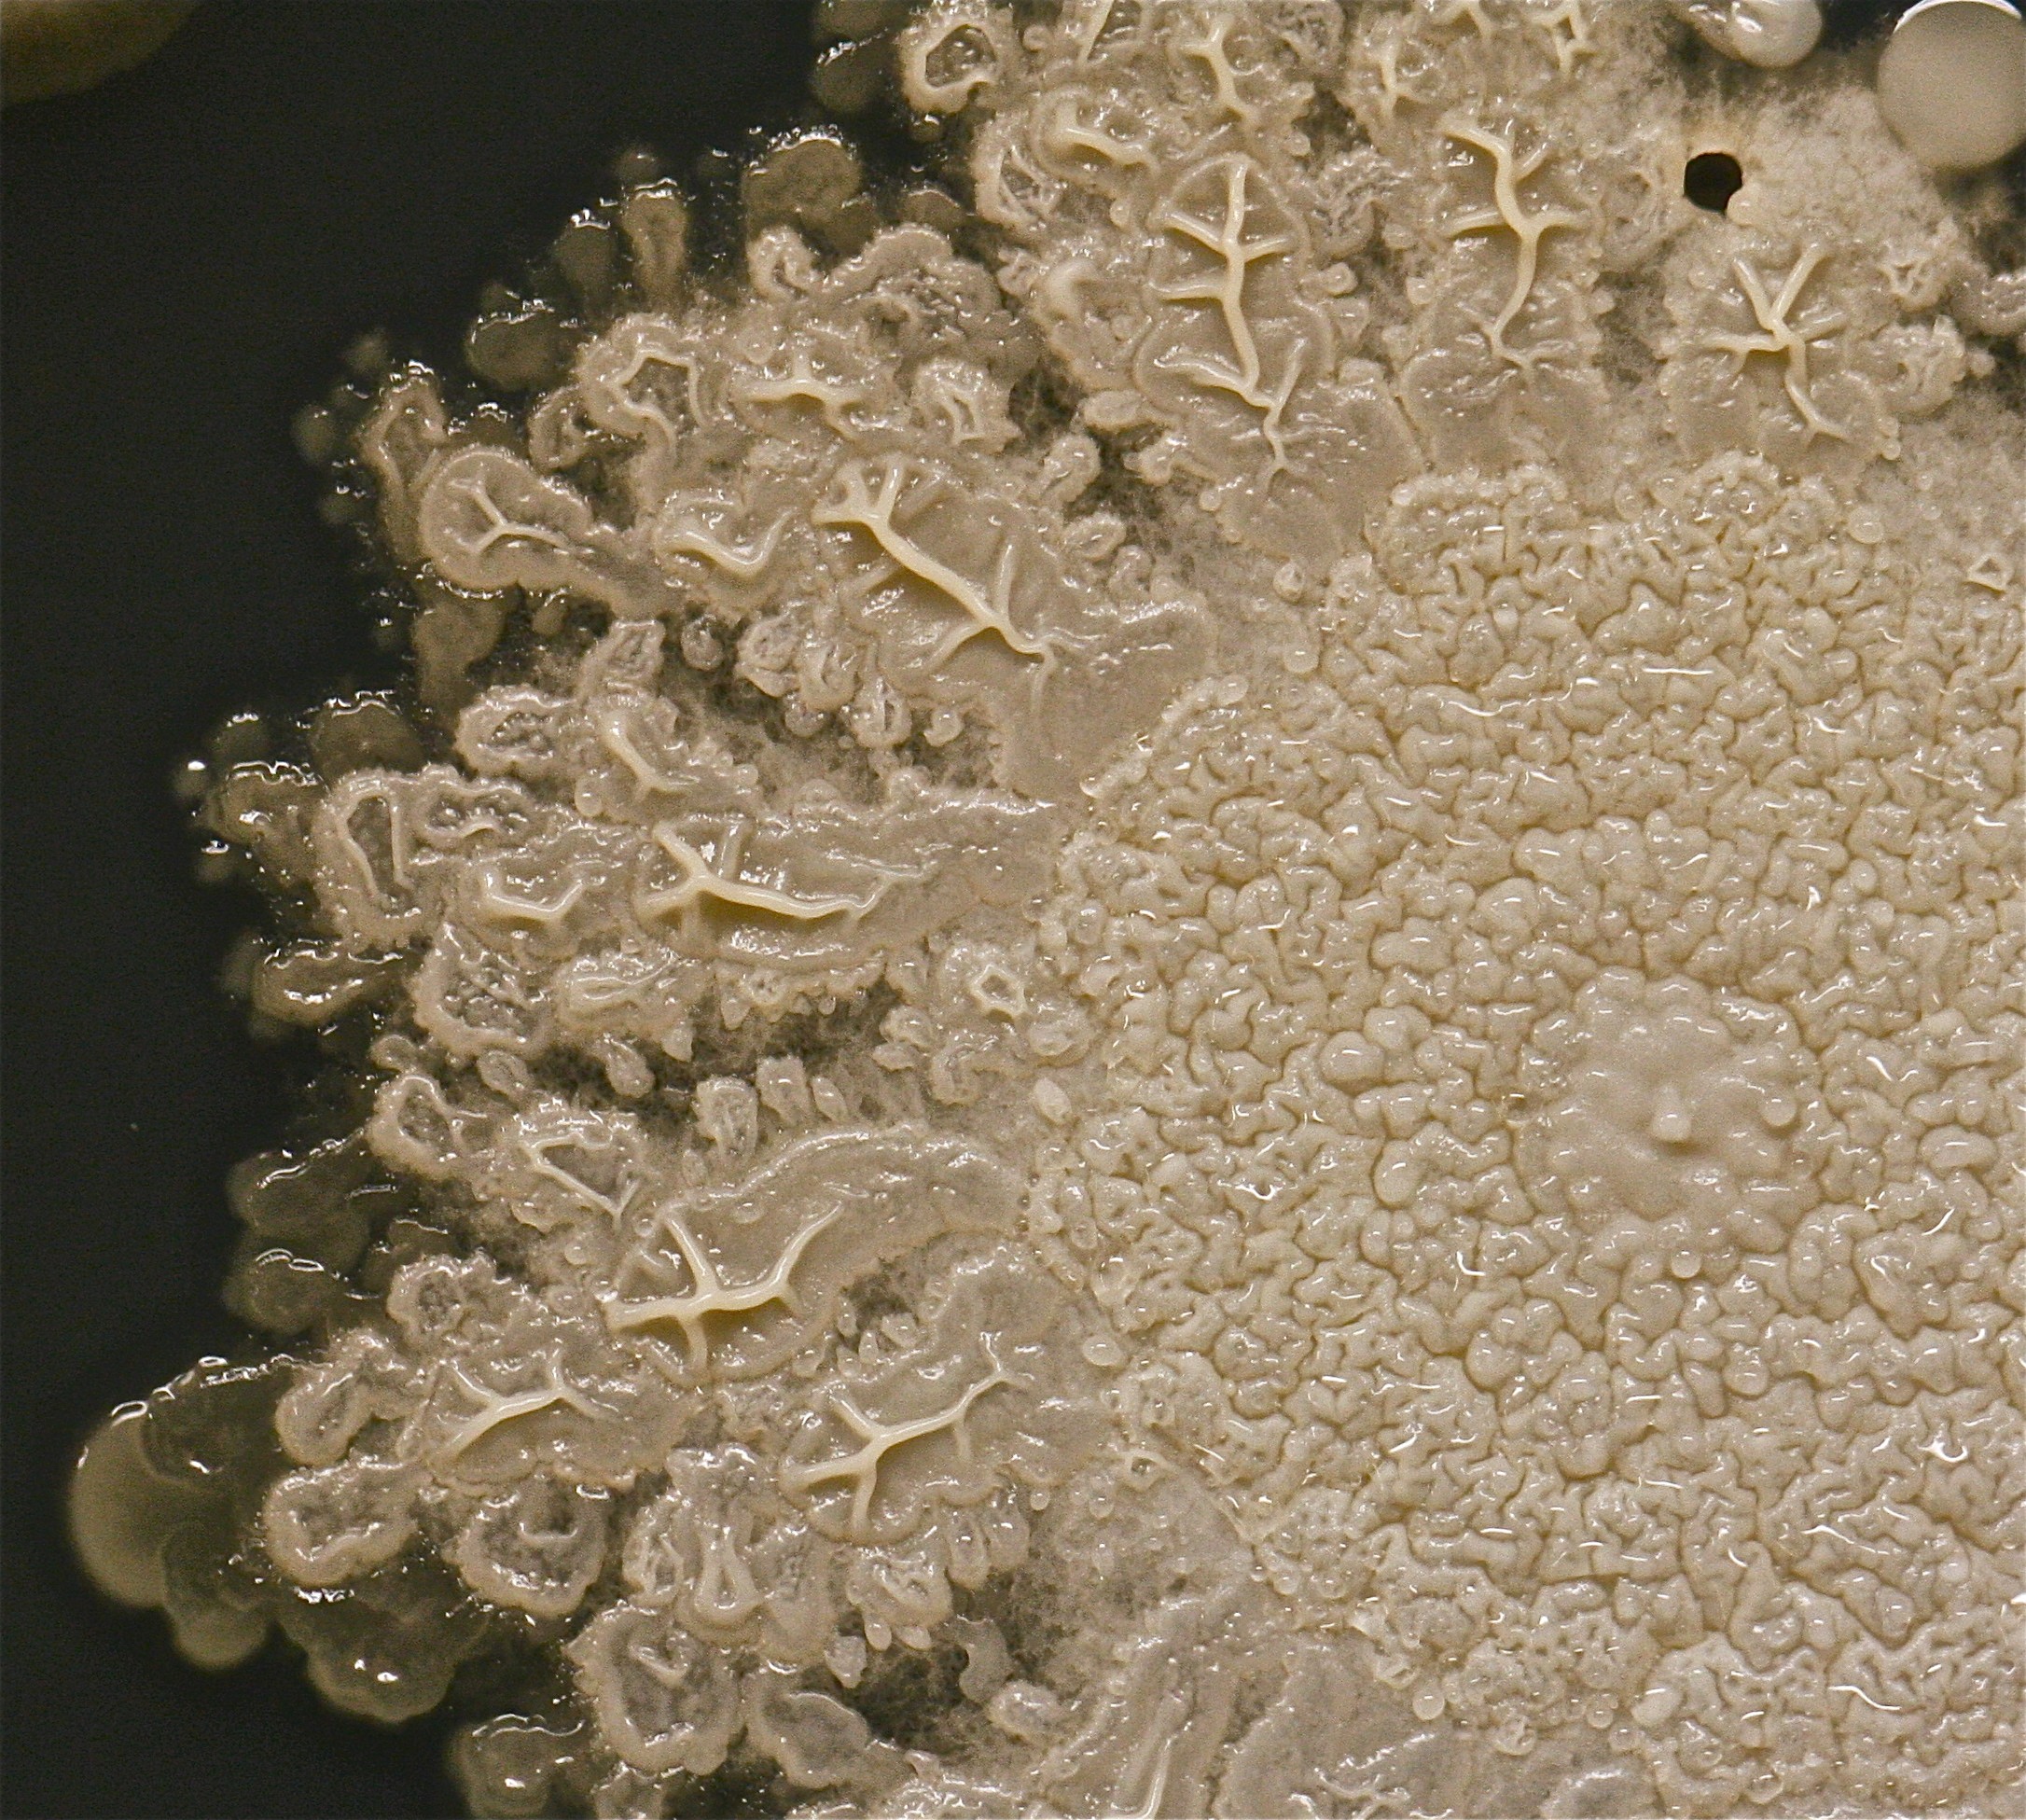 Uma das maiores colônias da placa, provavelmente um tipo de bacilo (Foto: Reprodução)